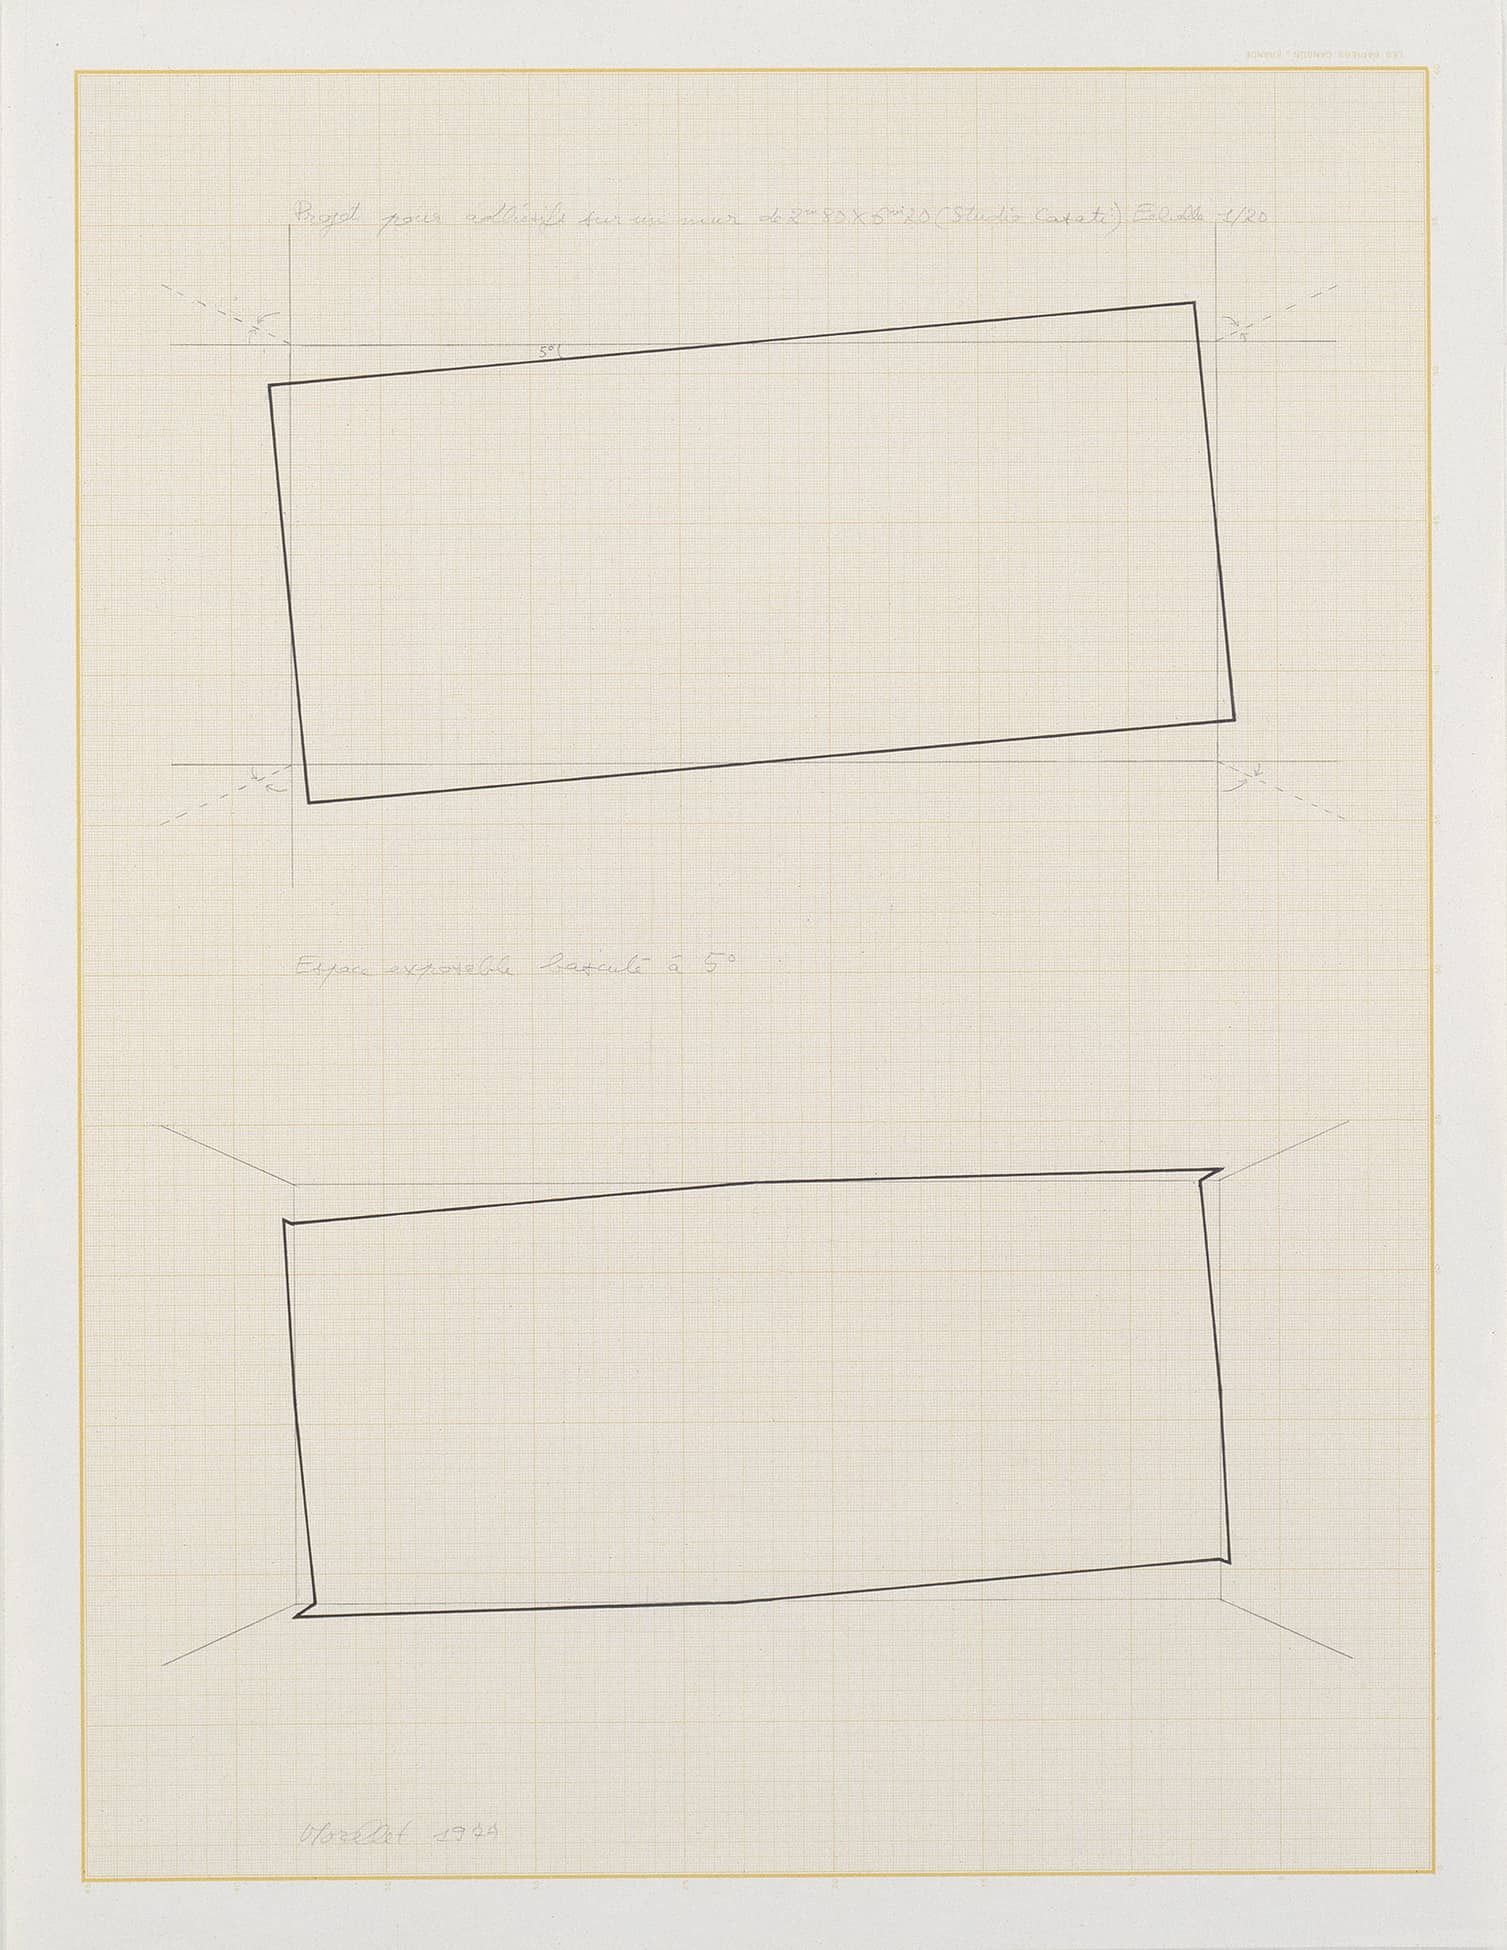 François Morellet, Espace exposable basculé à 5°, 1977, graphite et encre noire sur papier millimétré, 65 x 50 cm. © Collection Frac Picardie